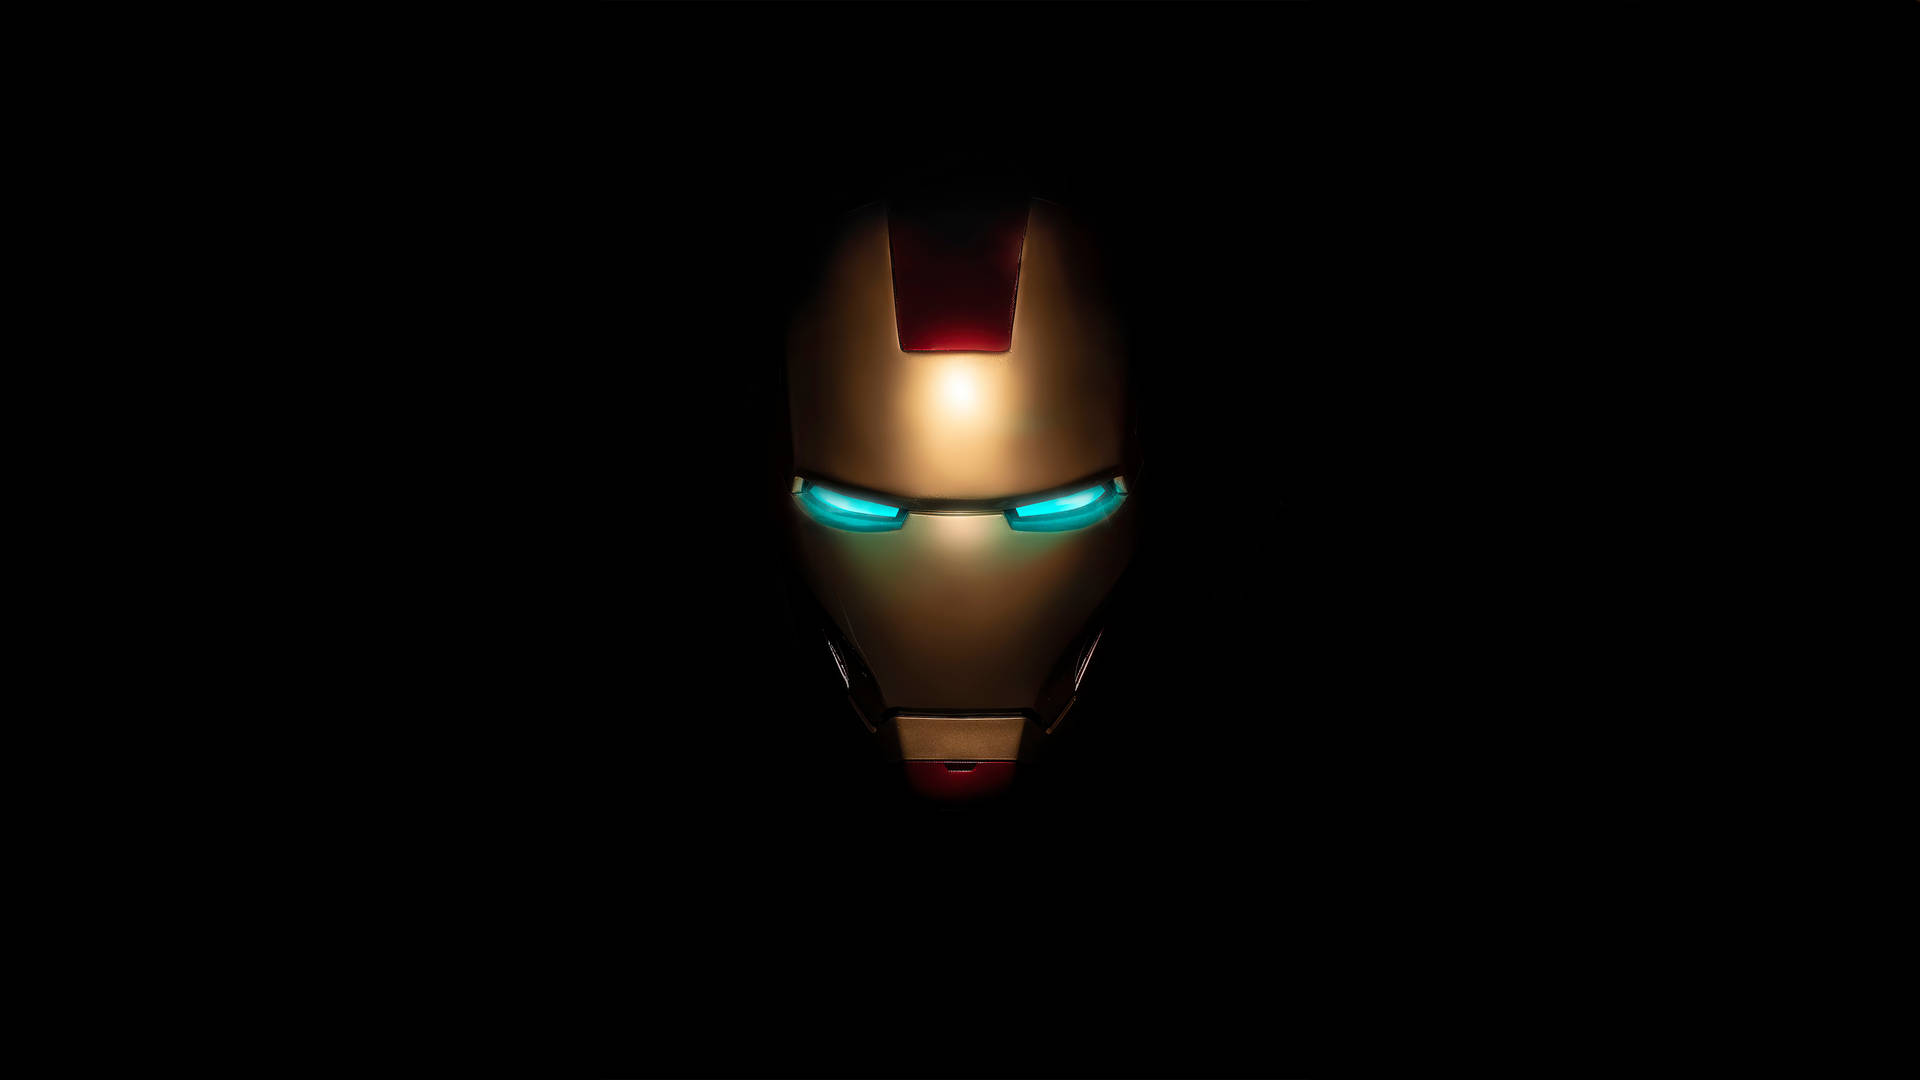 Iron Man Mask Logo On Black